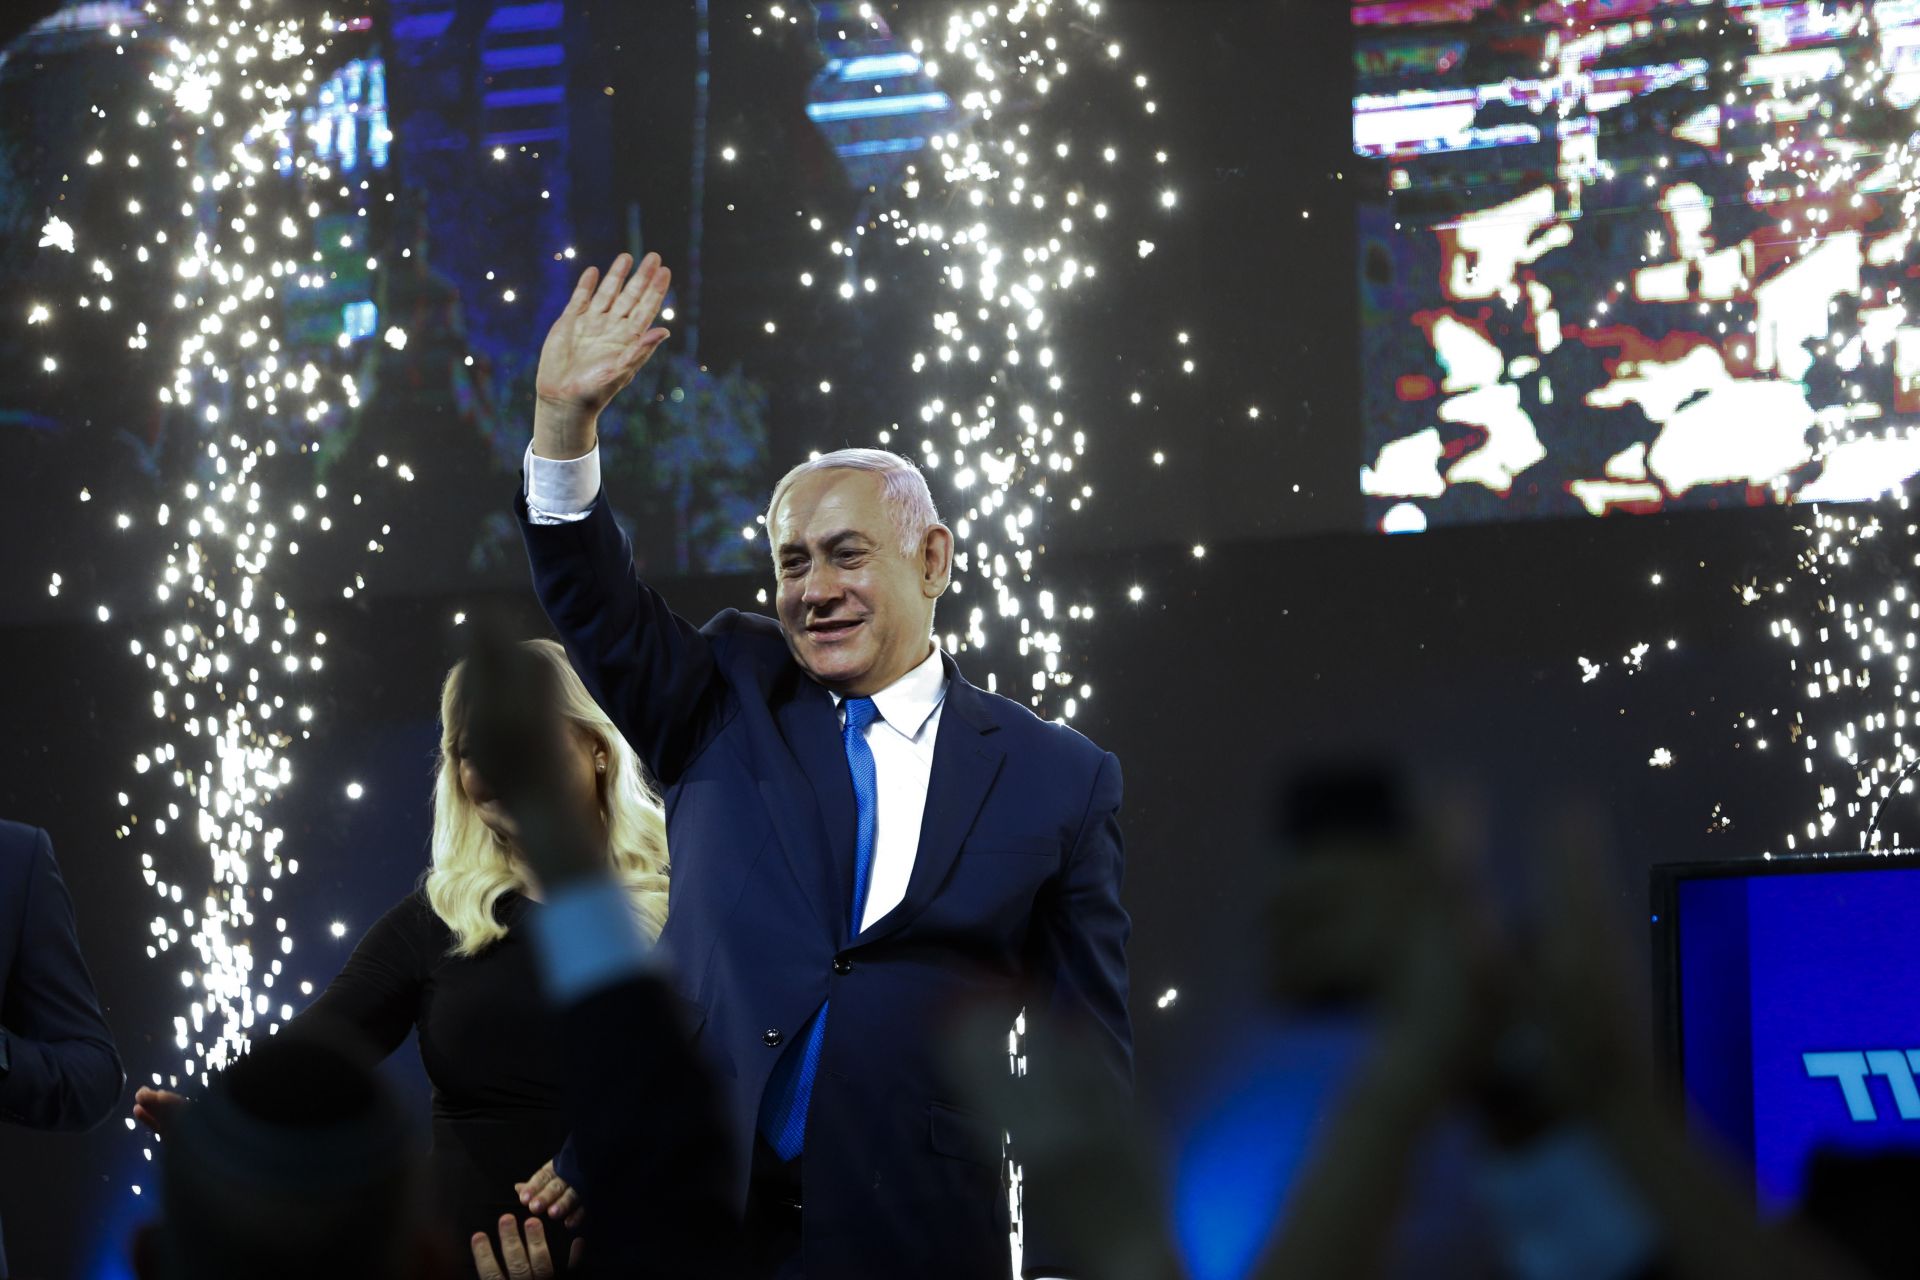 При 96 процента преброени гласове, дясната партия "Ликуд" на Нетаняху печели 37 места в Кнесета